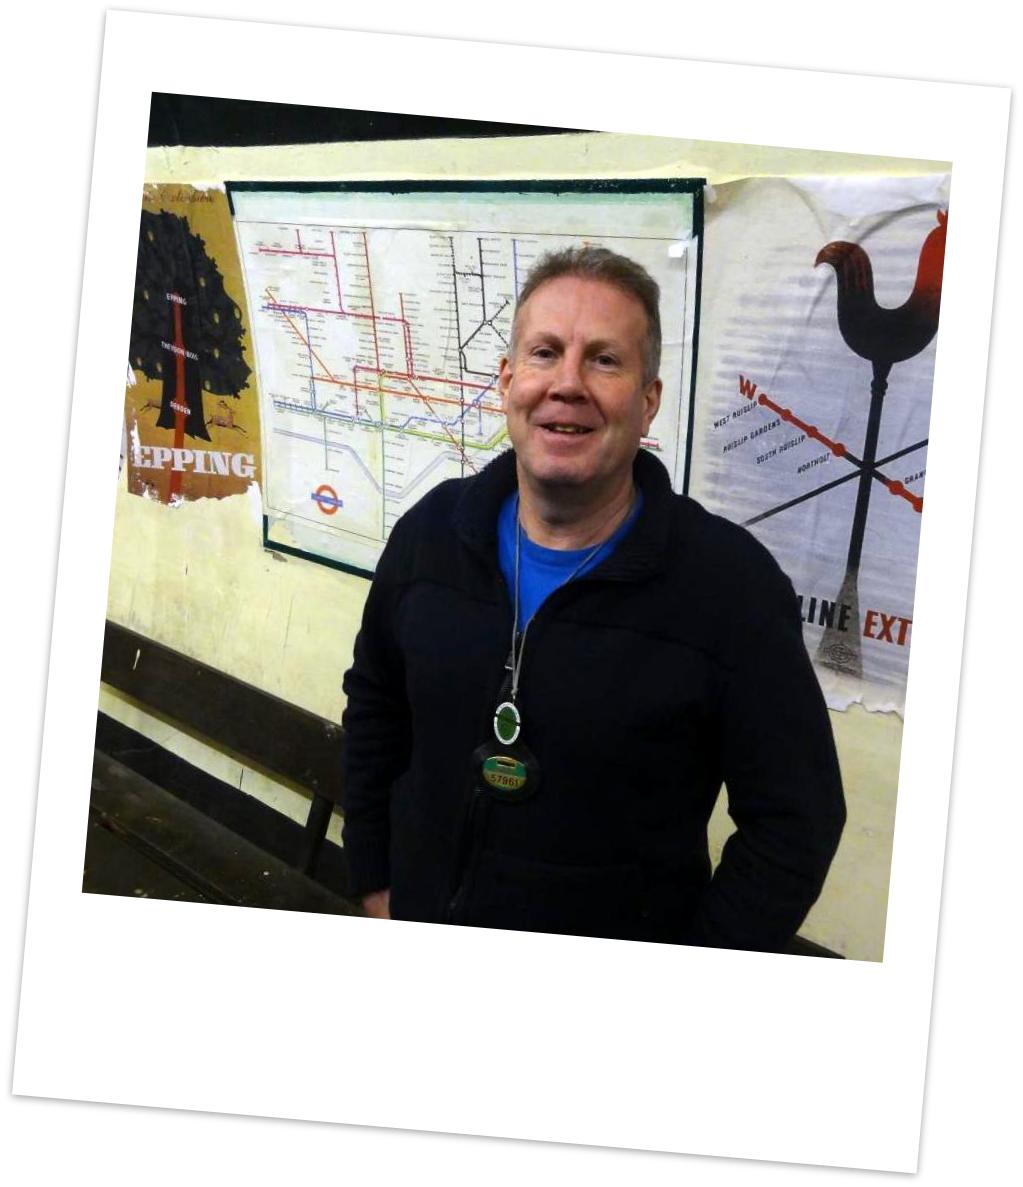 Steve at Aldwych underground station